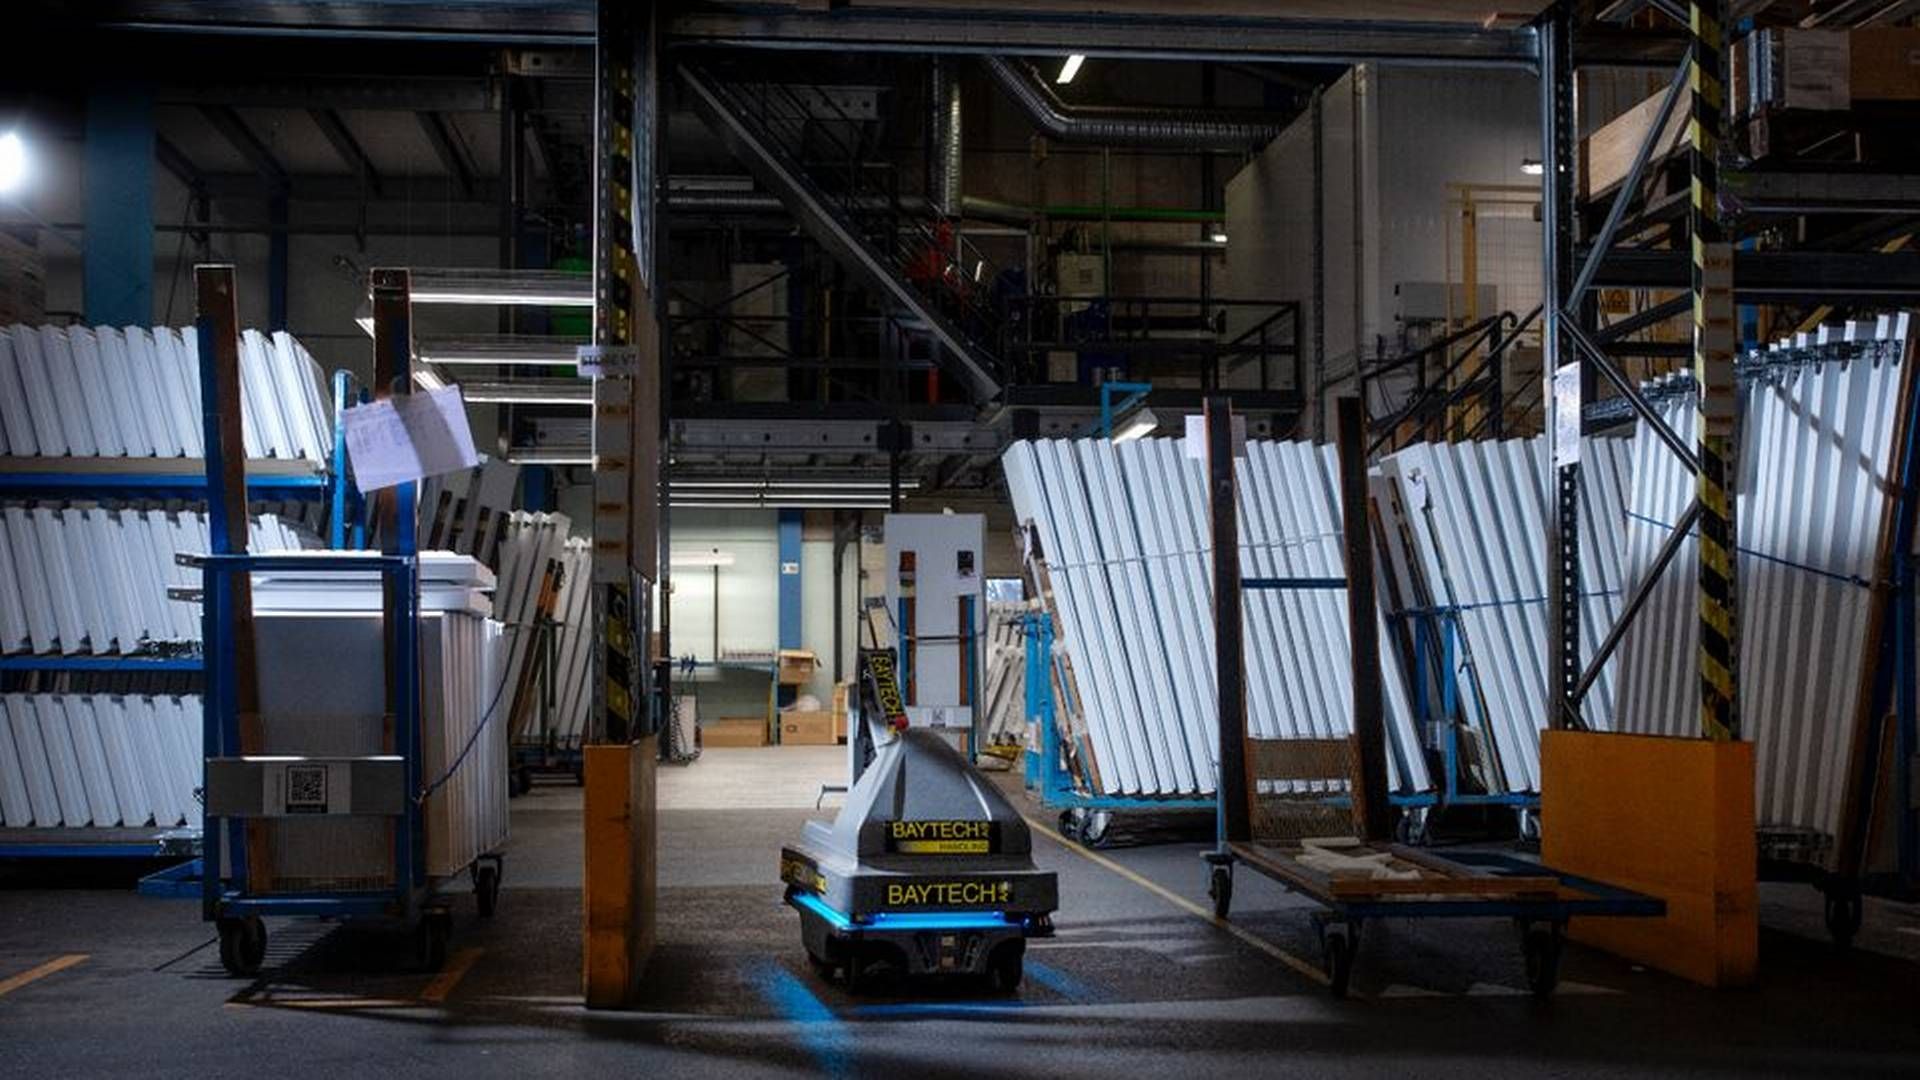 Esbjerg-virksomheden Vestfrost rundede i 2021 600 mio. kr. i omsætning. Forventningerne til 2022 lyder dog på et moderat fald i omsætning og et betydeligt fald i indtjeningen, skriver ledelsen i sin beretning. | Foto: Foto: Pr